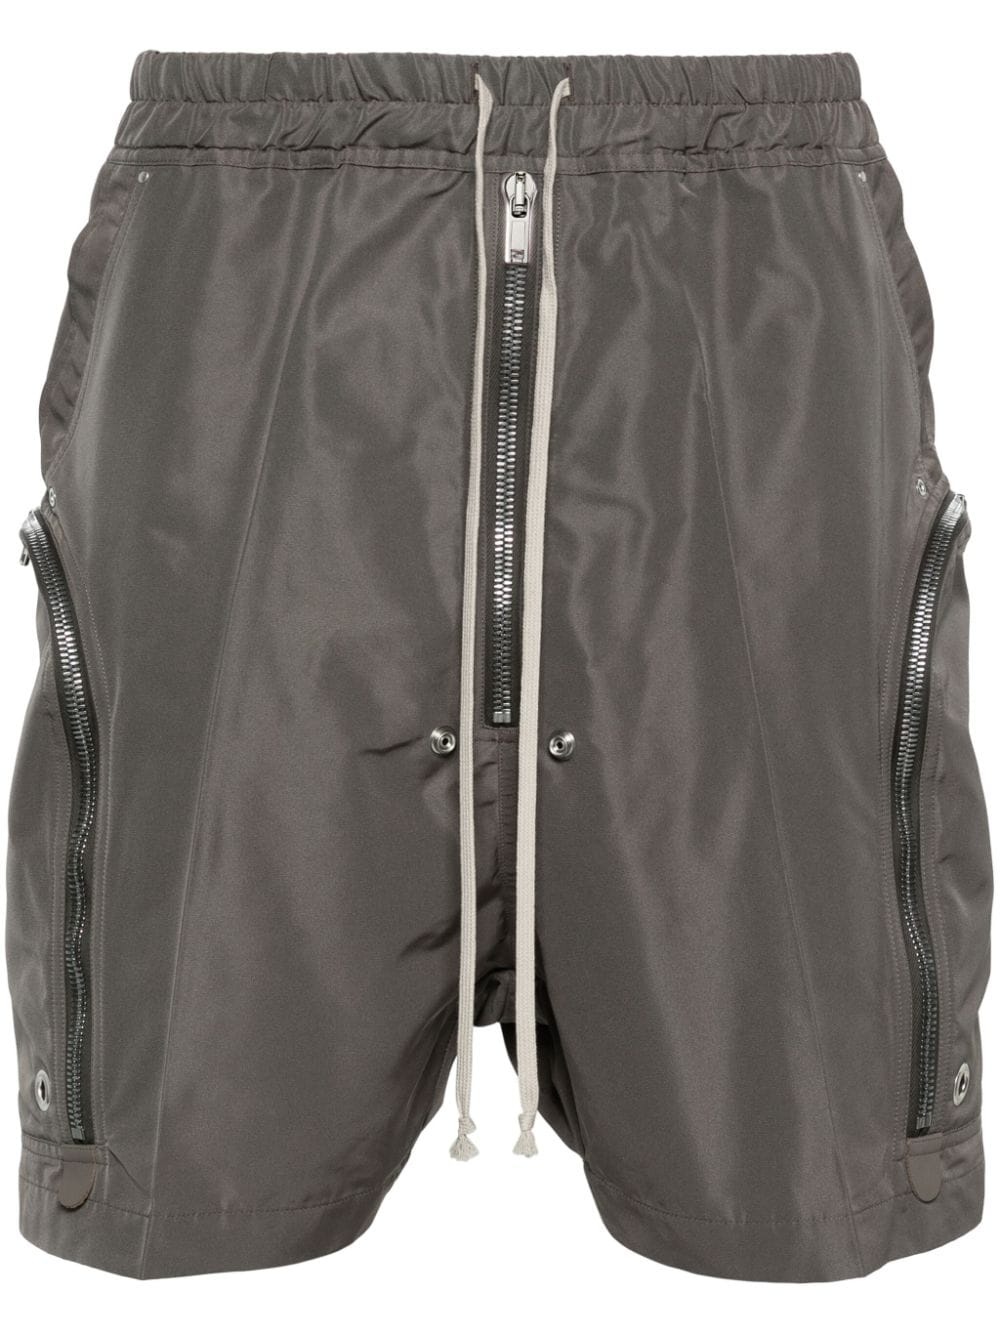 Bauhaus cargo shorts - 1